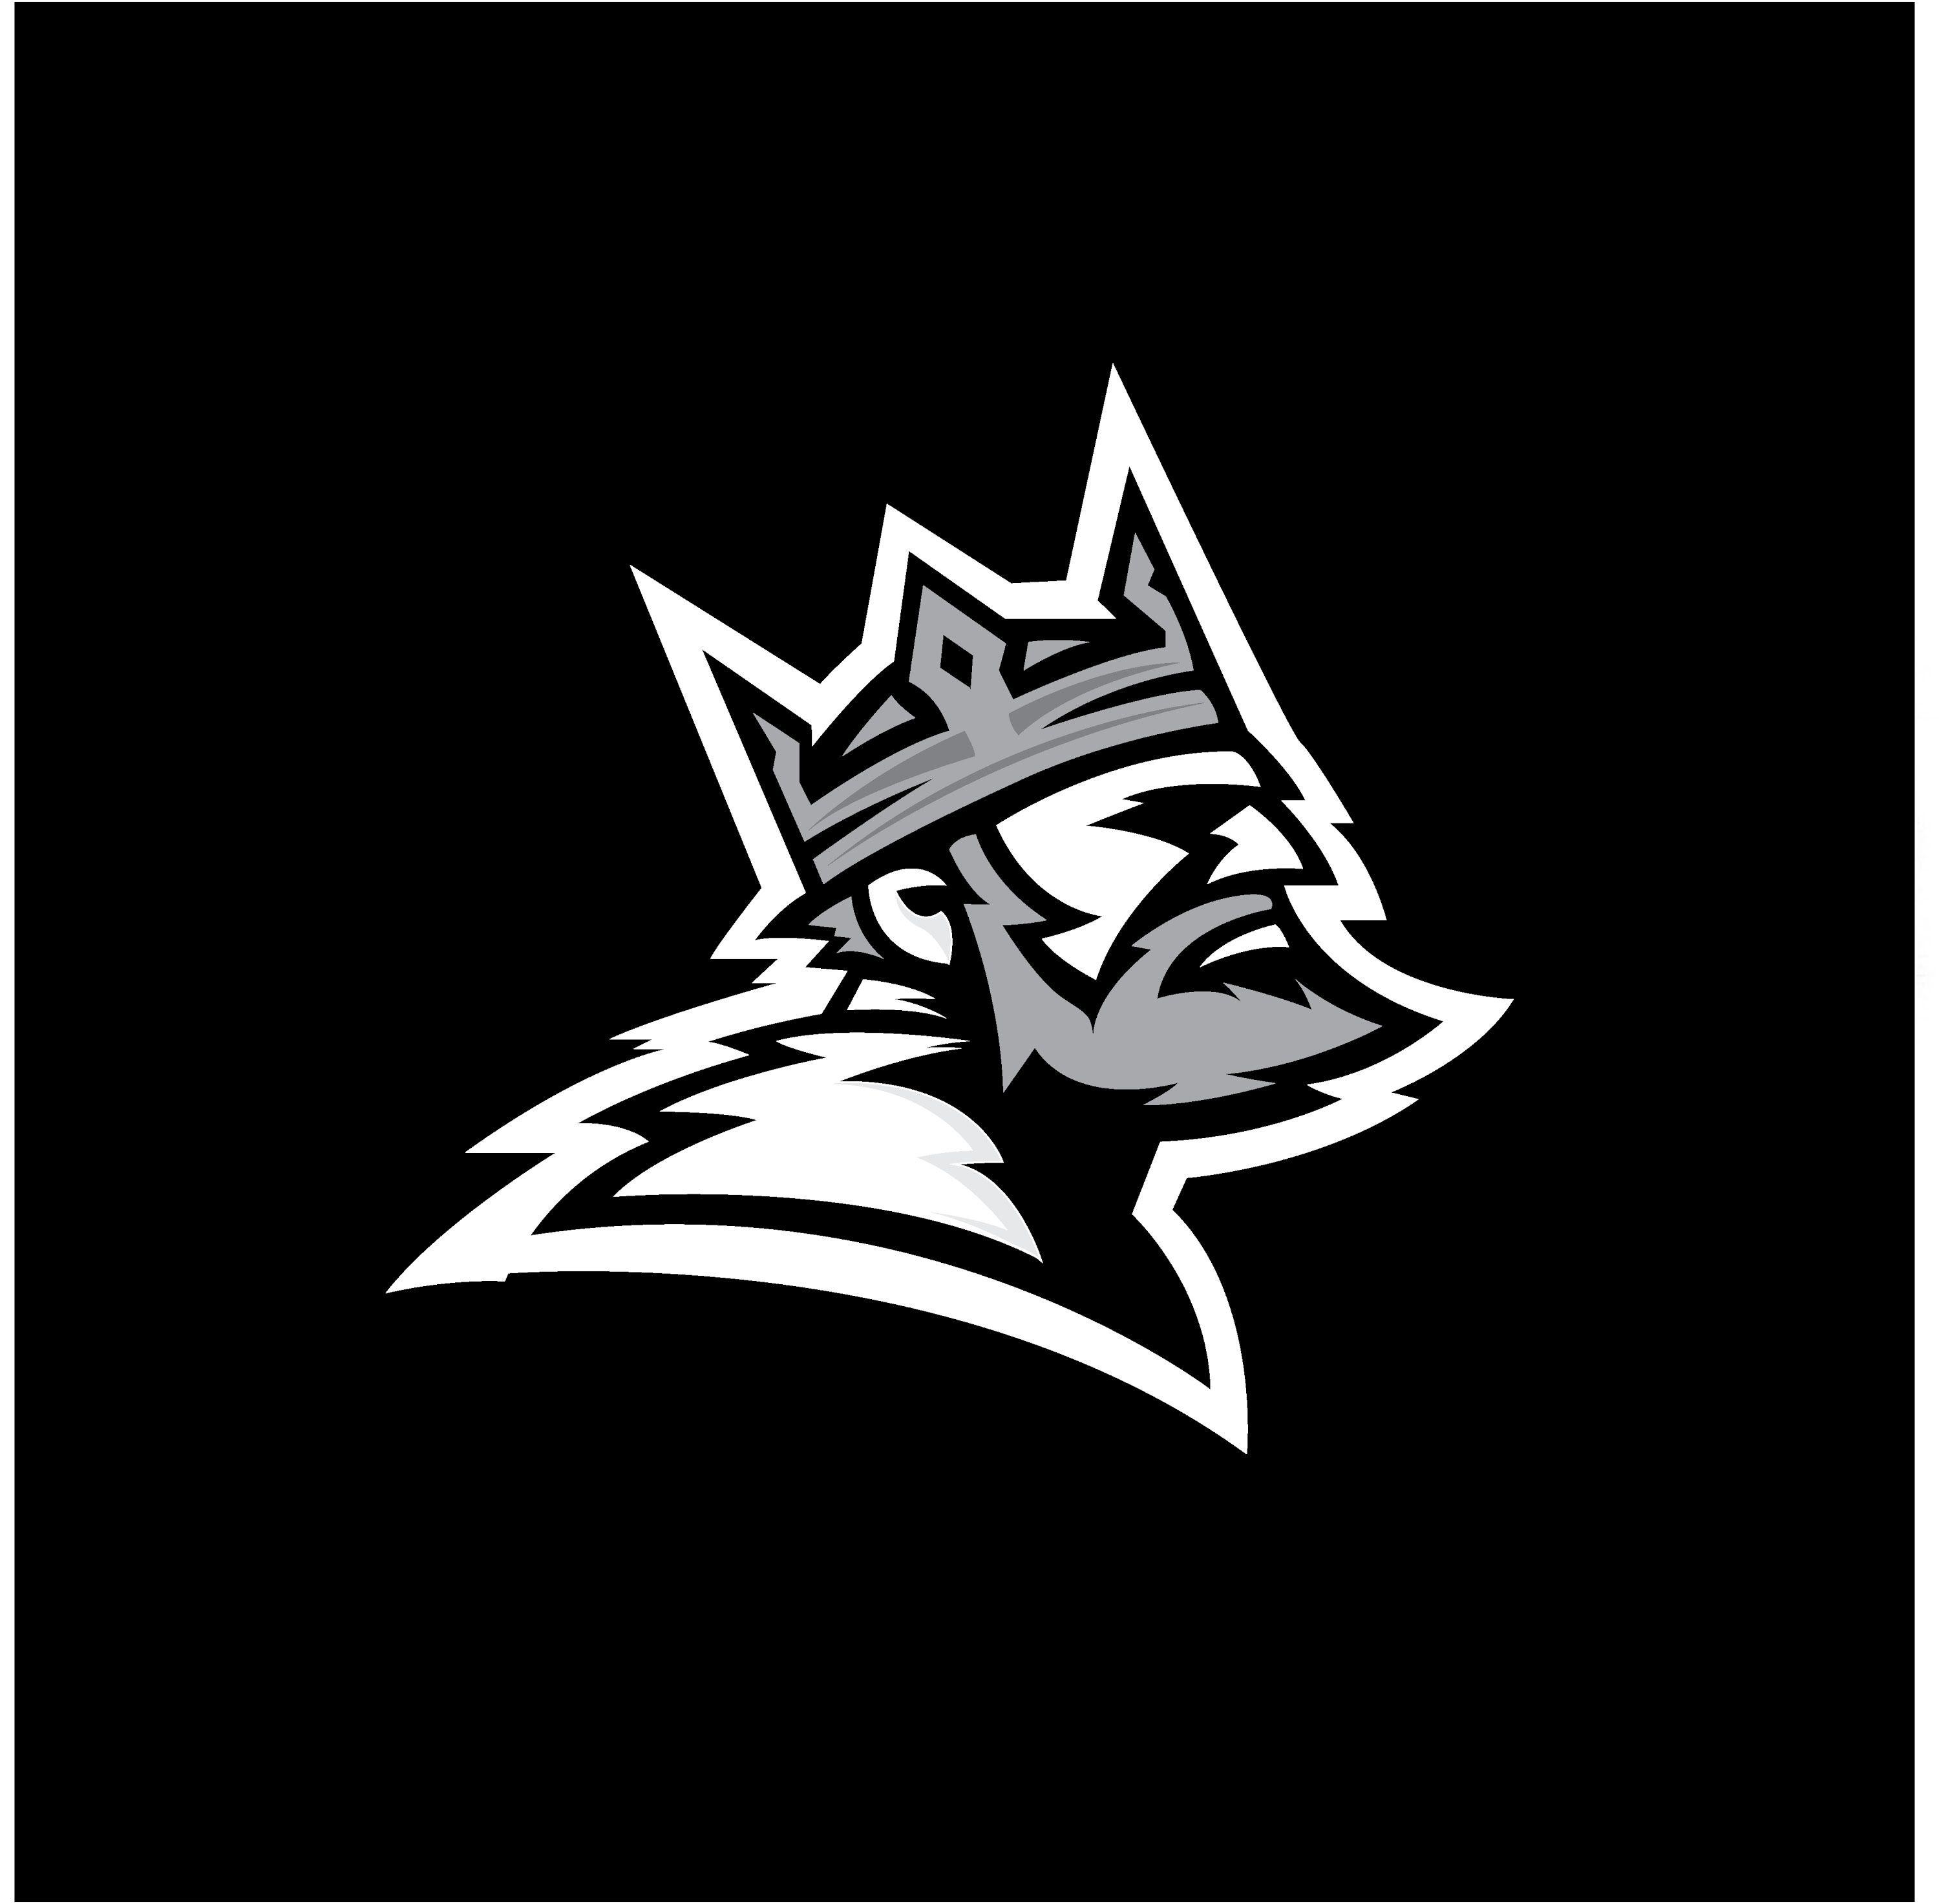 2017 Viking Logo - 11 King drawing logo for free download on Ayoqq.org